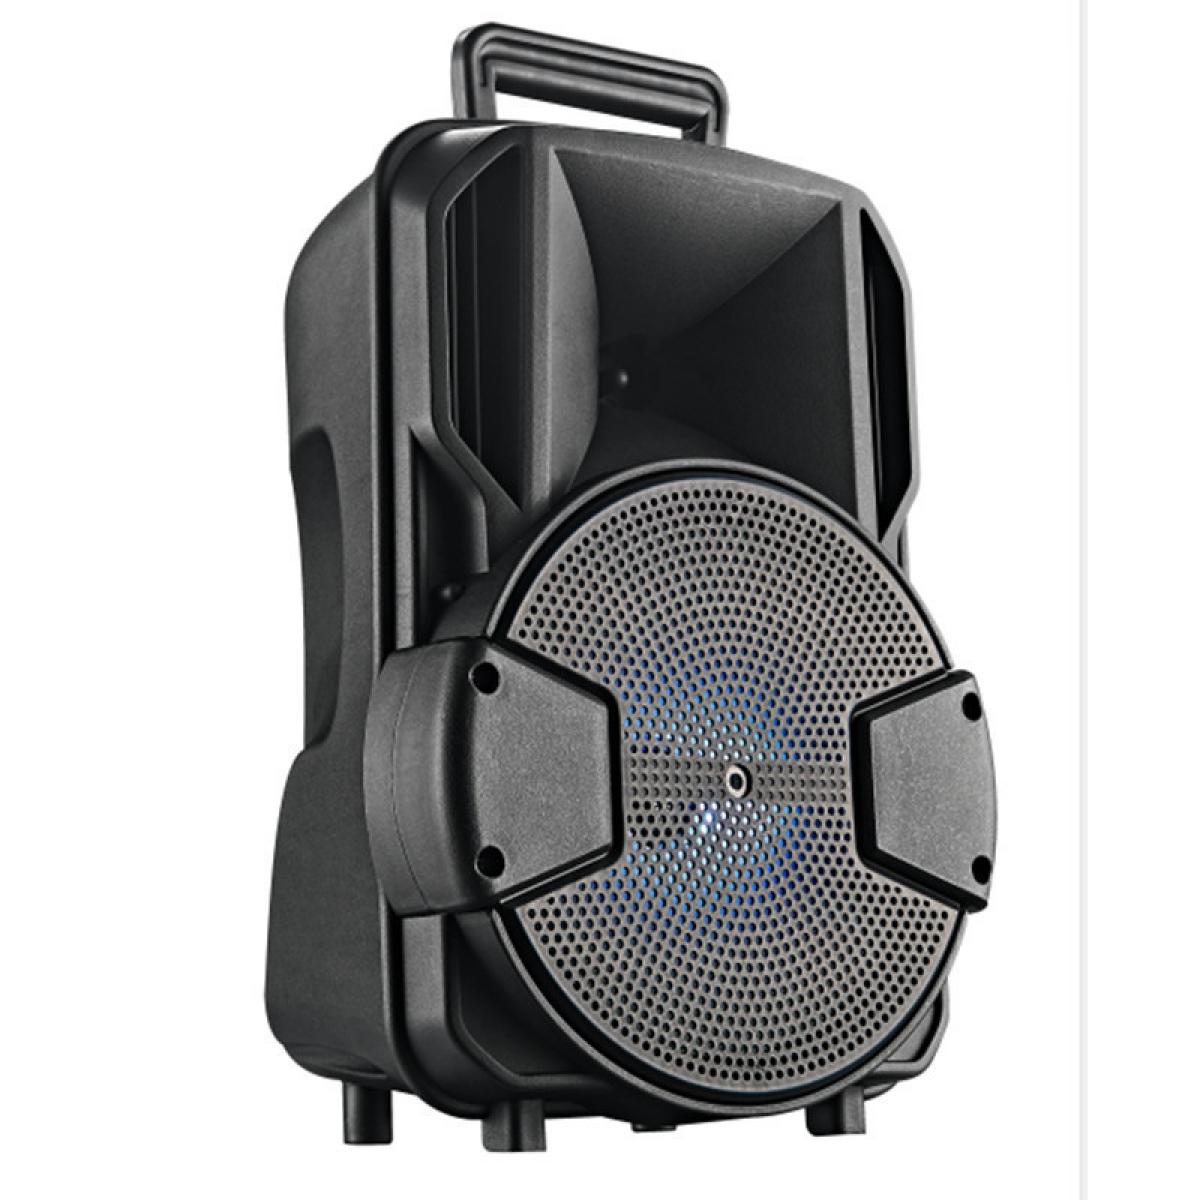 Hauts-parleurs Universal Haut-parleur Bluetooth portable avec microphone imperméable extérieur sans fil sans fil Stereo Bass Subwoofer Subwoofer Sound Support FM TF AUX | Haut-parleurs de plein air (Noir)